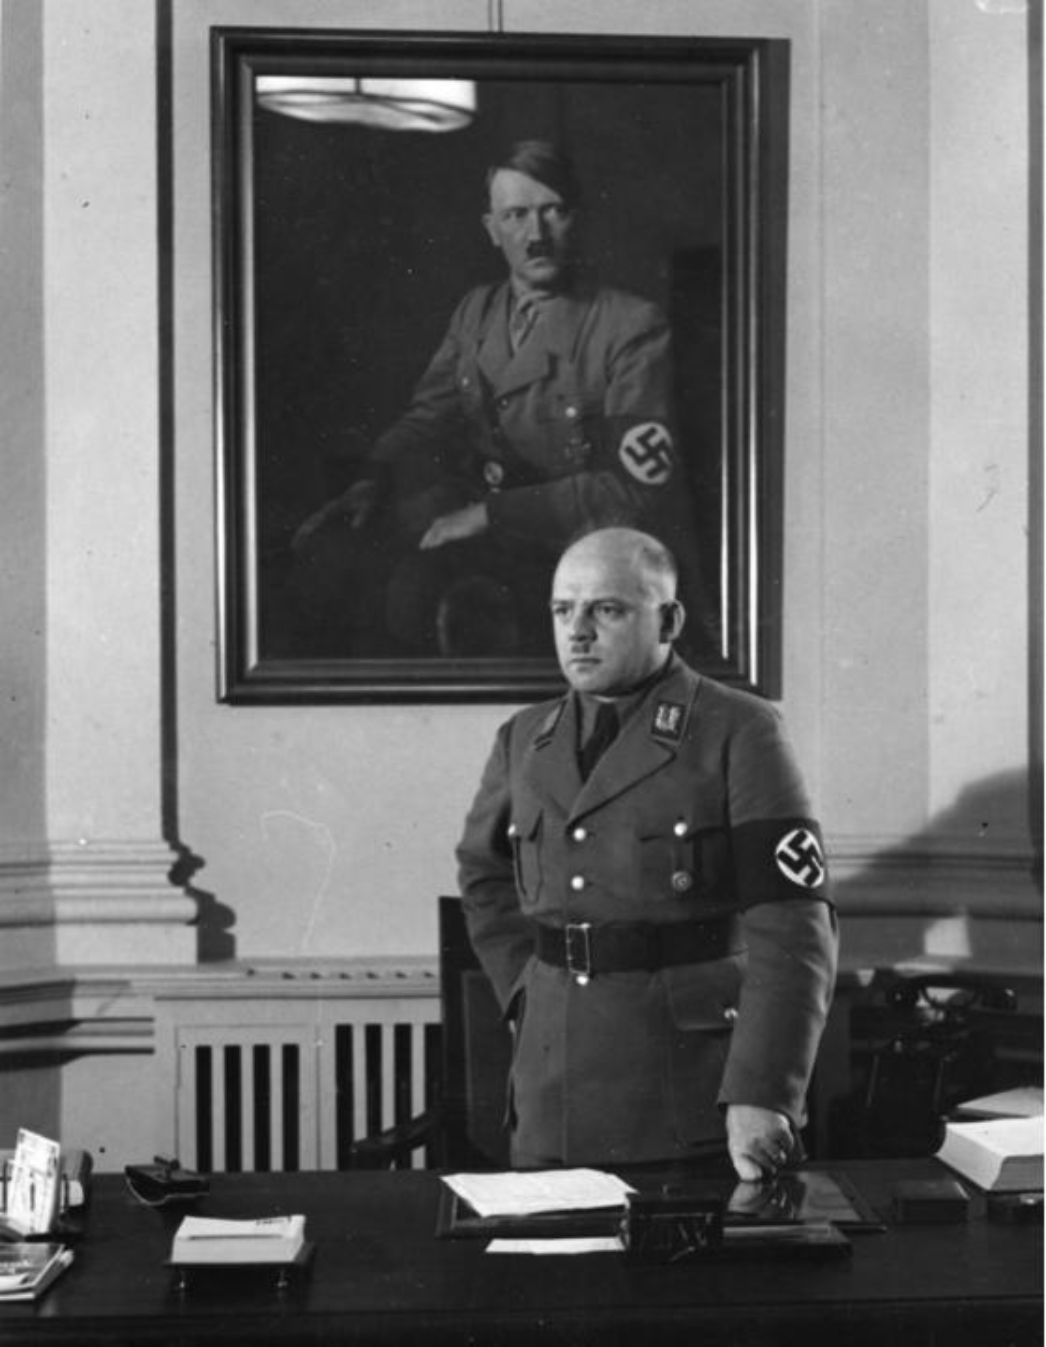 Zu sehen ist ein glatzköpfiger Mann in Uniform, der hinter seinem Schreibtisch, vor einem Portrait von Adolf hitler steht.